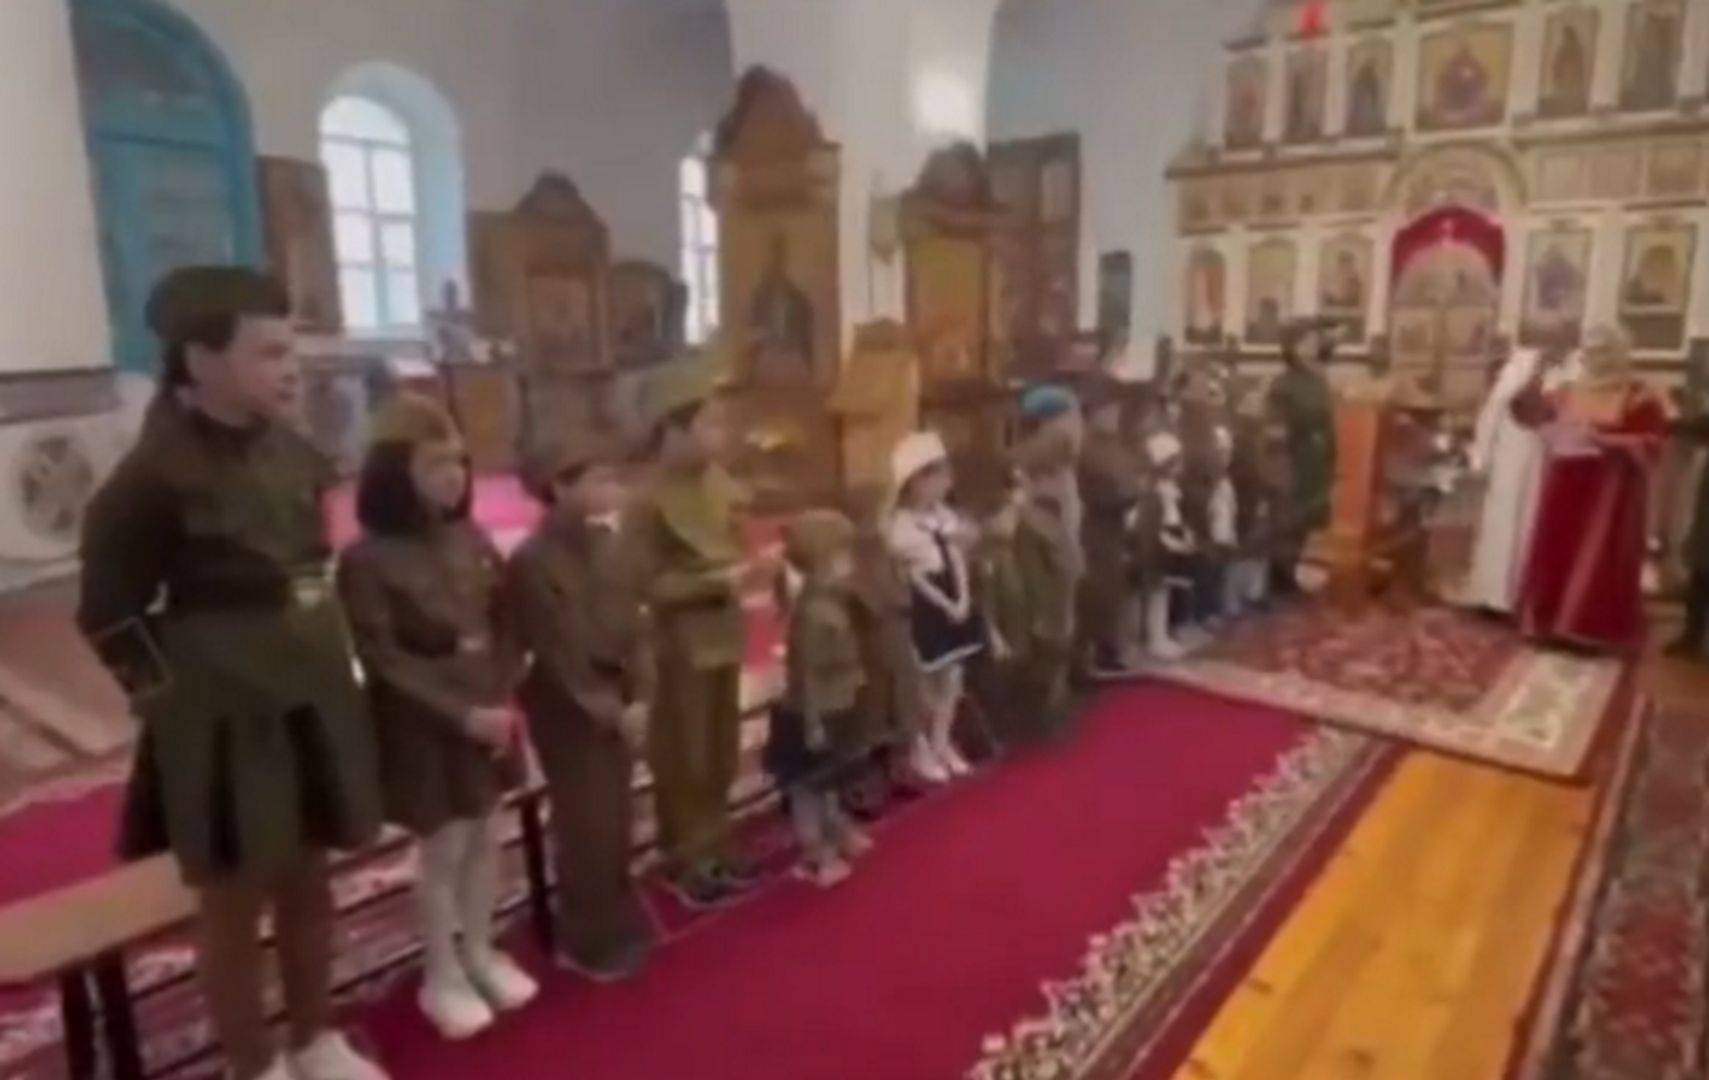 Niños vestidos con uniforme militar.  Difícil de creer el video de Rusia – o2